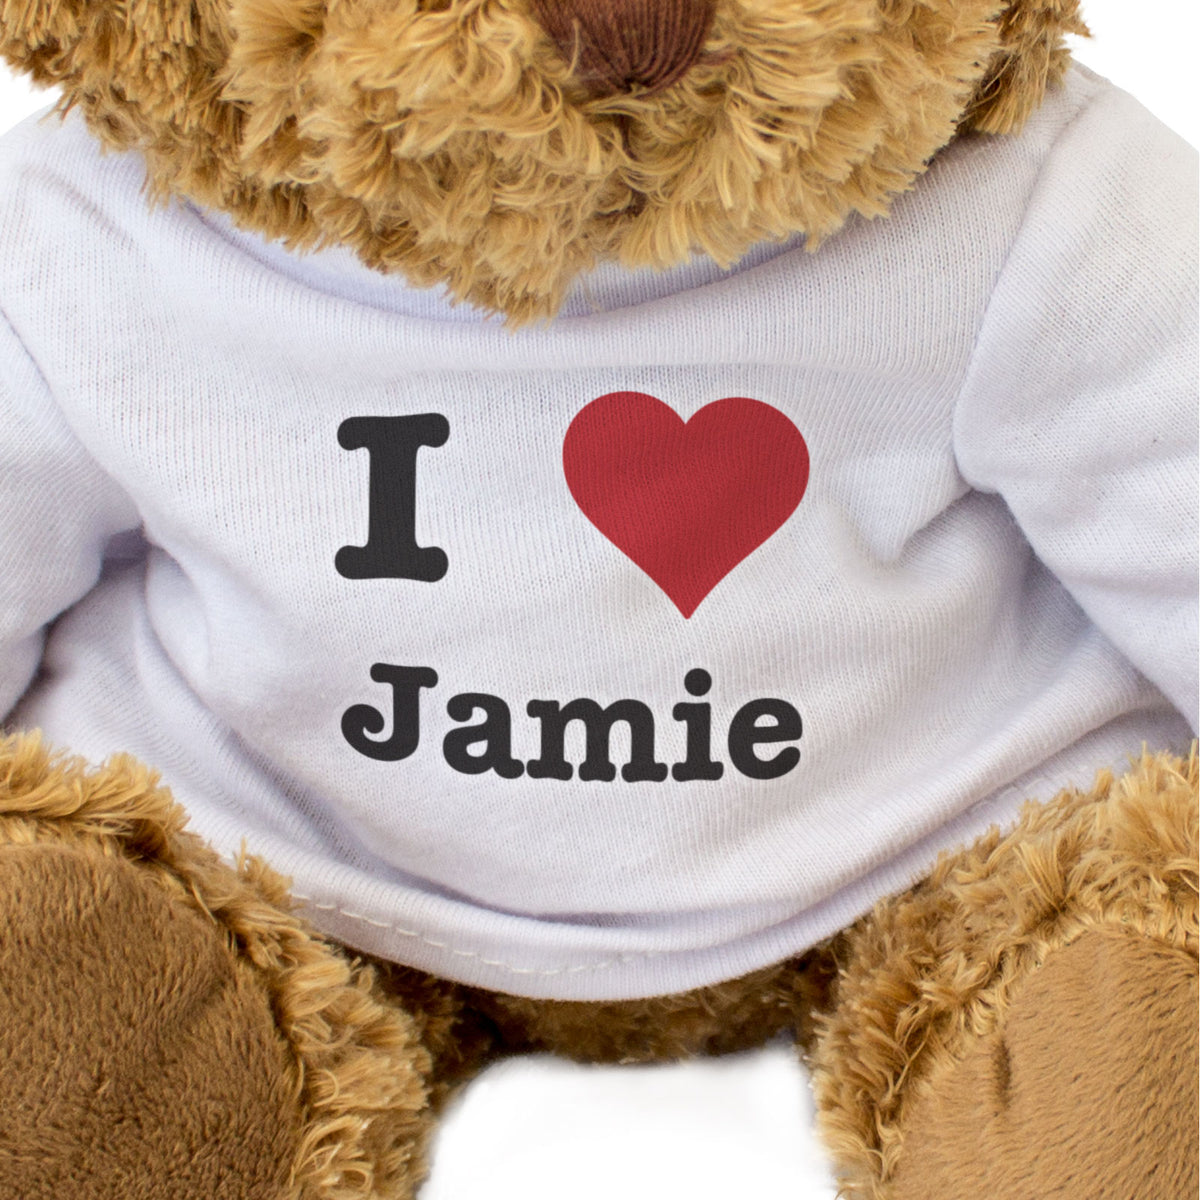 I Love Jamie - Teddy Bear